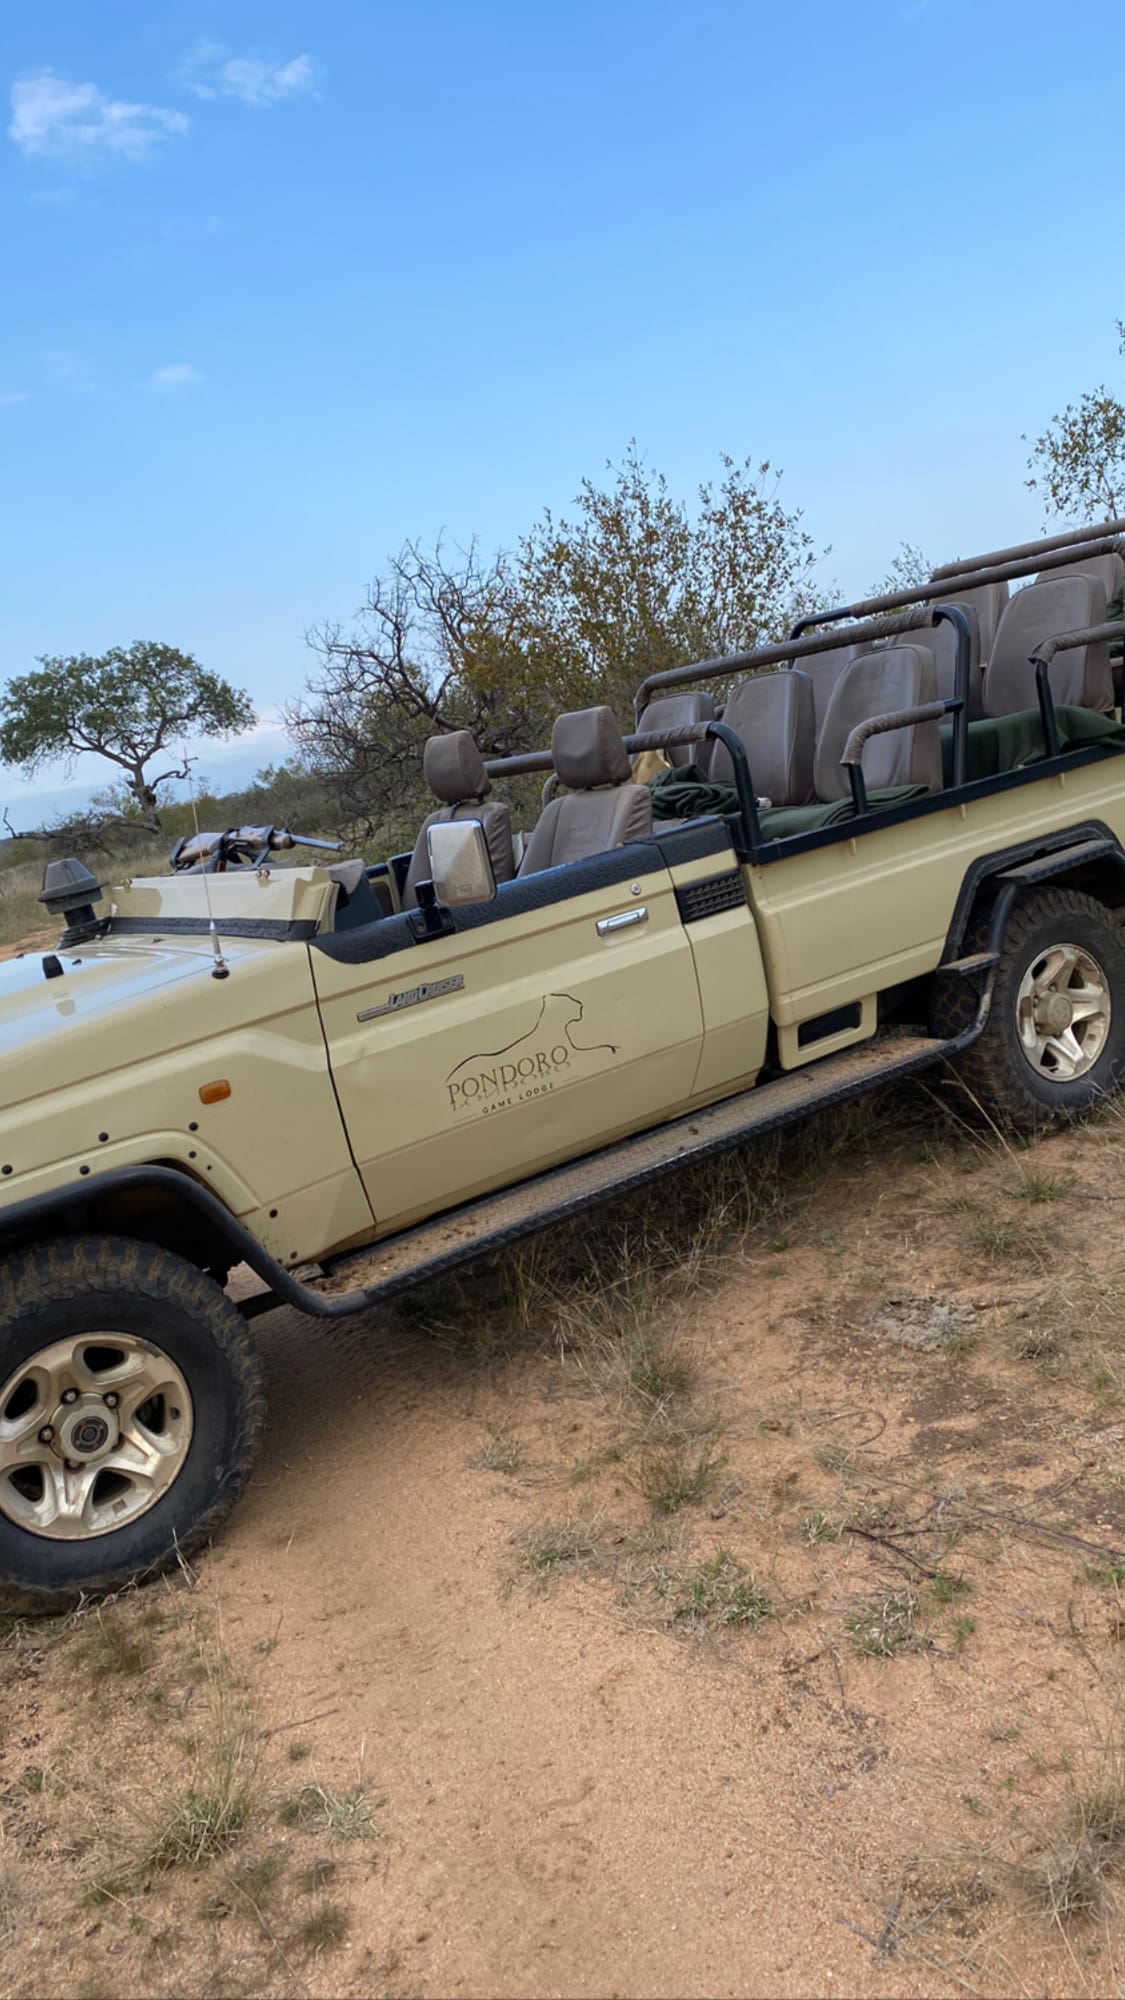 Safari vehicle in Pondoro Game Lodge